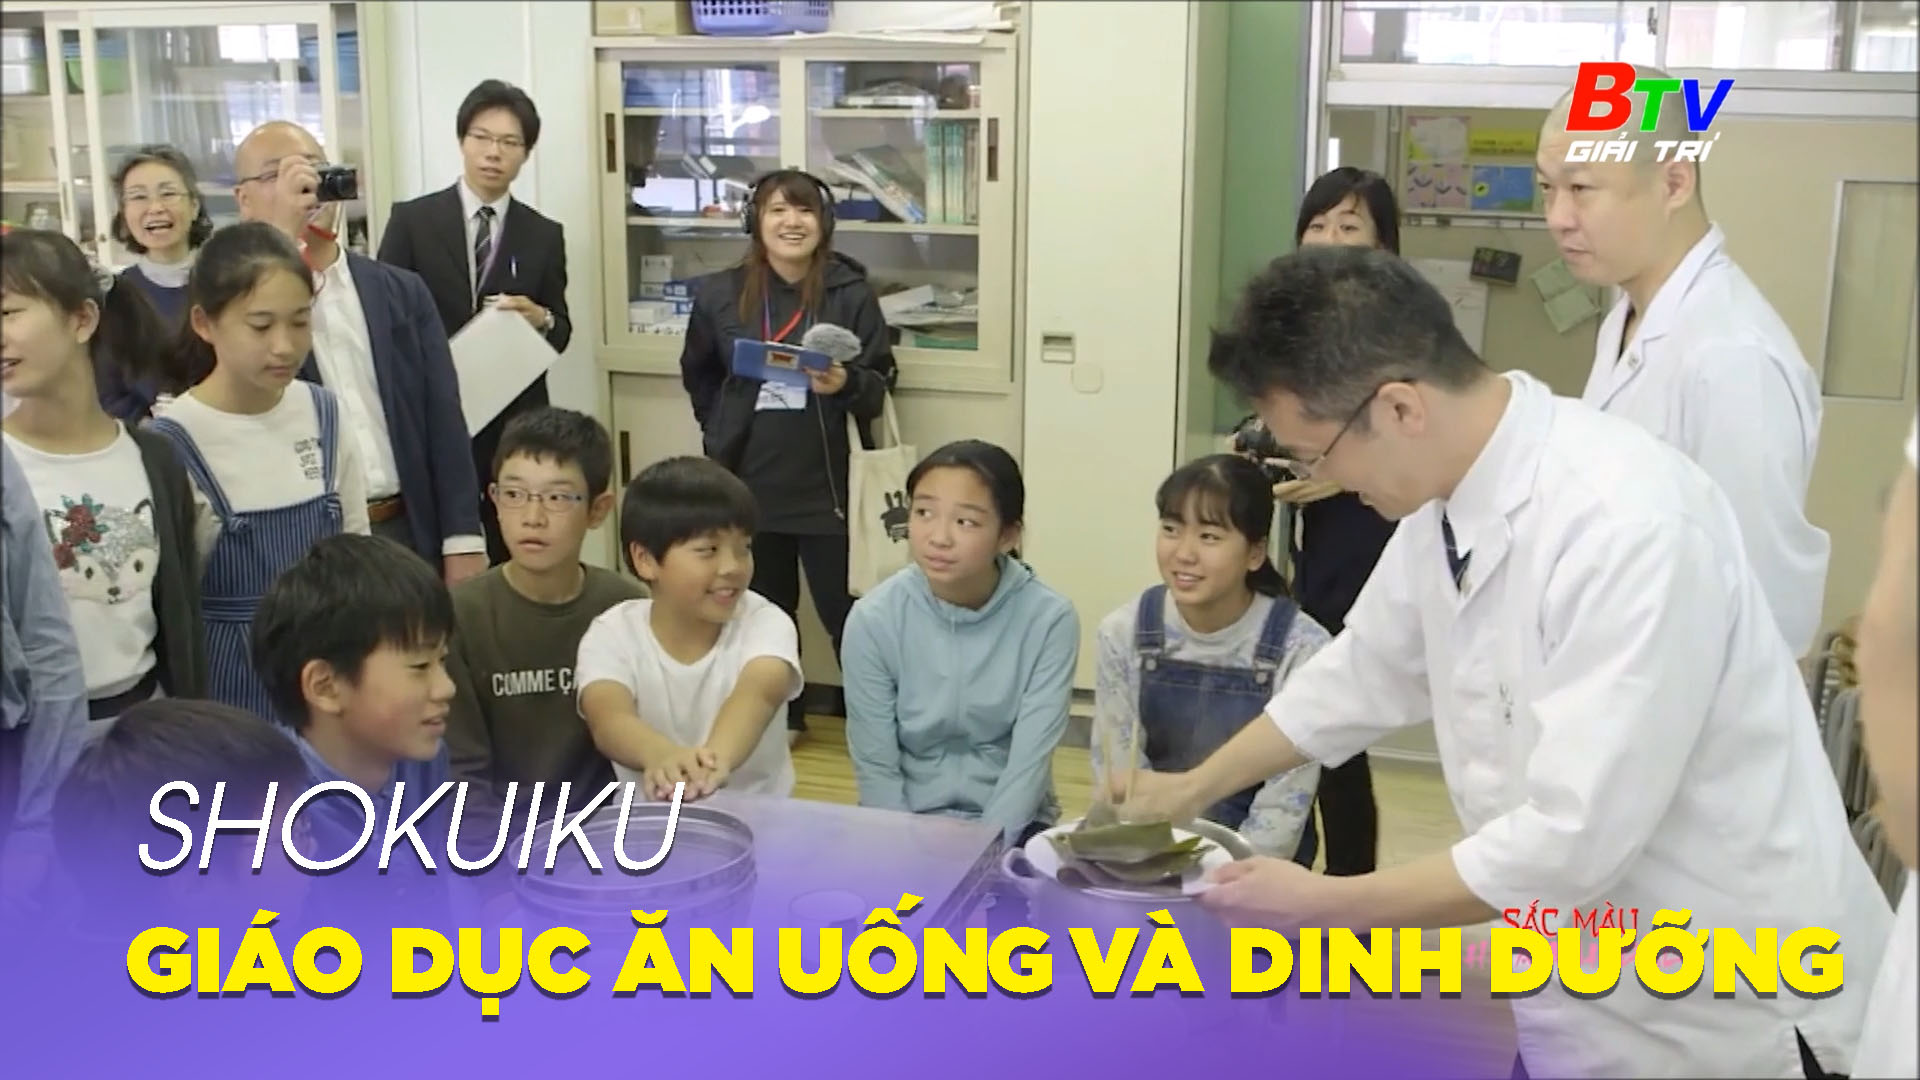 Shokuiku – Giáo dục ăn uống và dinh dưỡng